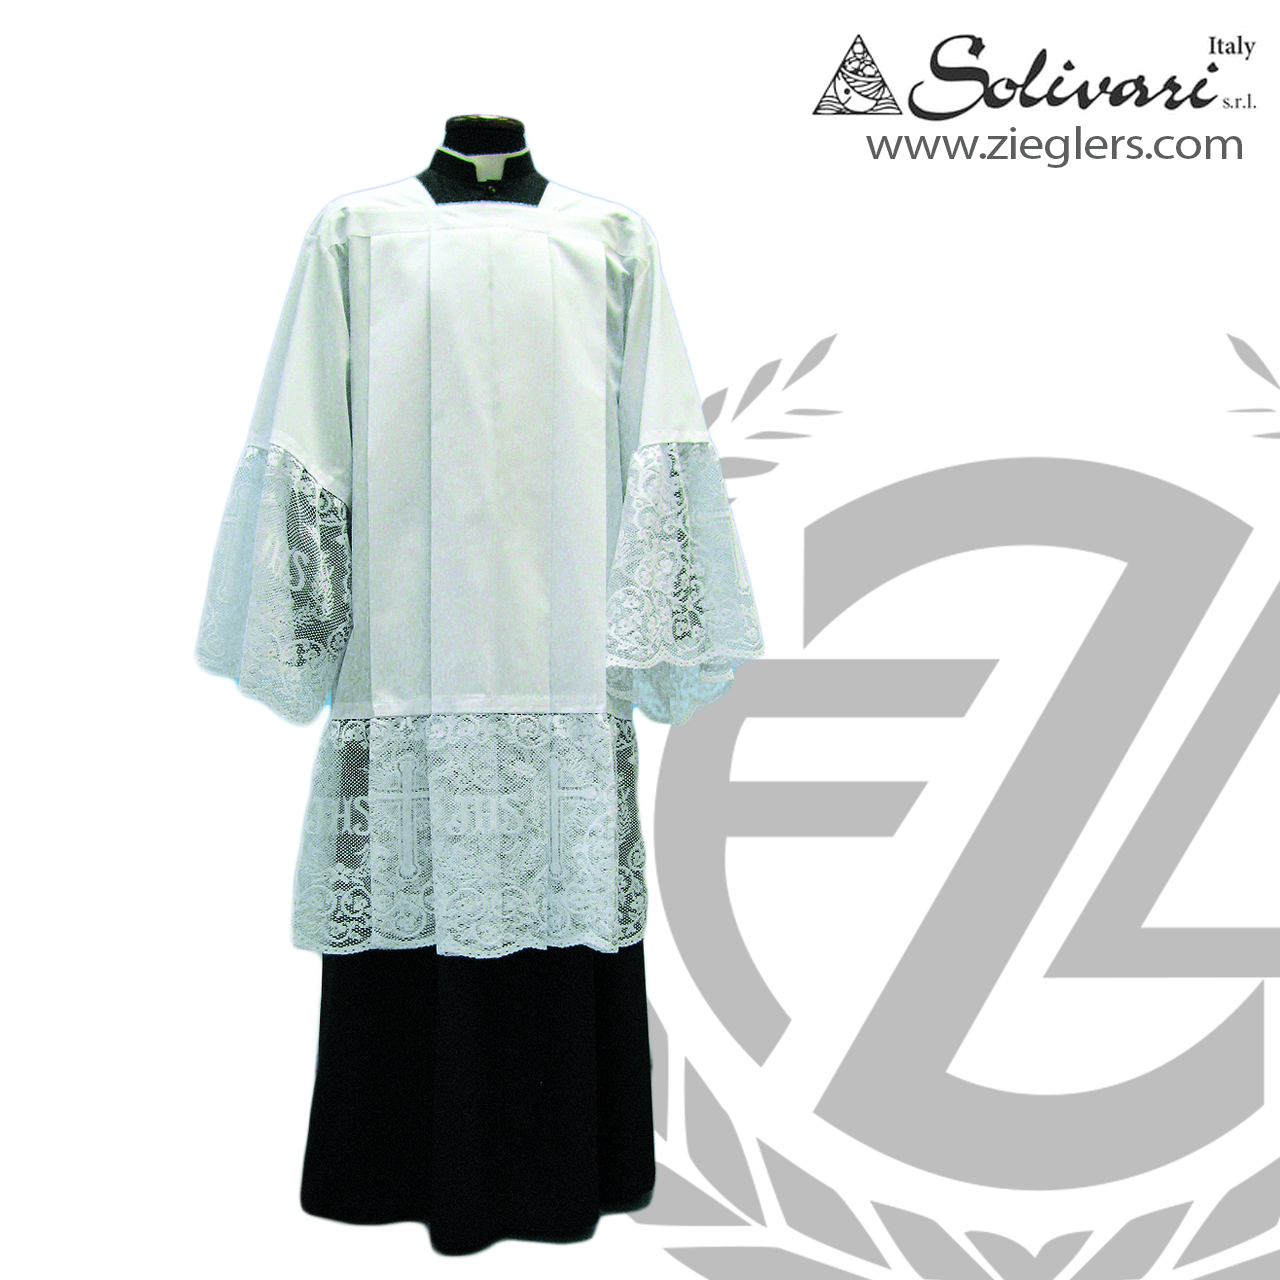 Clergy Surplice, 11 Lace, Square Neckline, Cotton Blend, 4 Sizes, Solivari, Italy